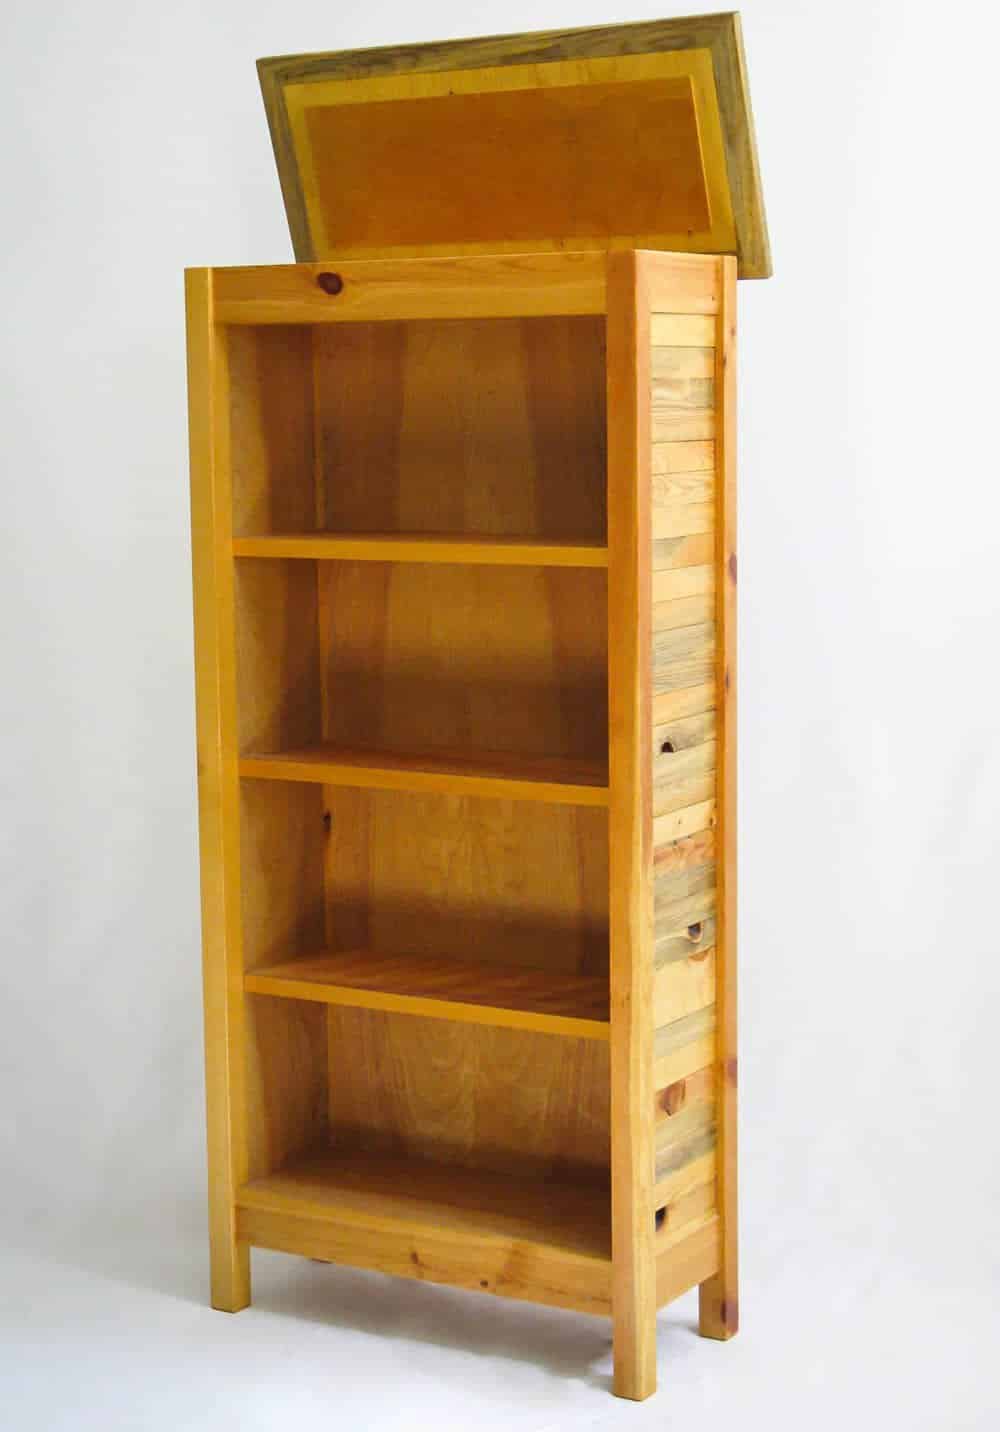 Book/curio shelf